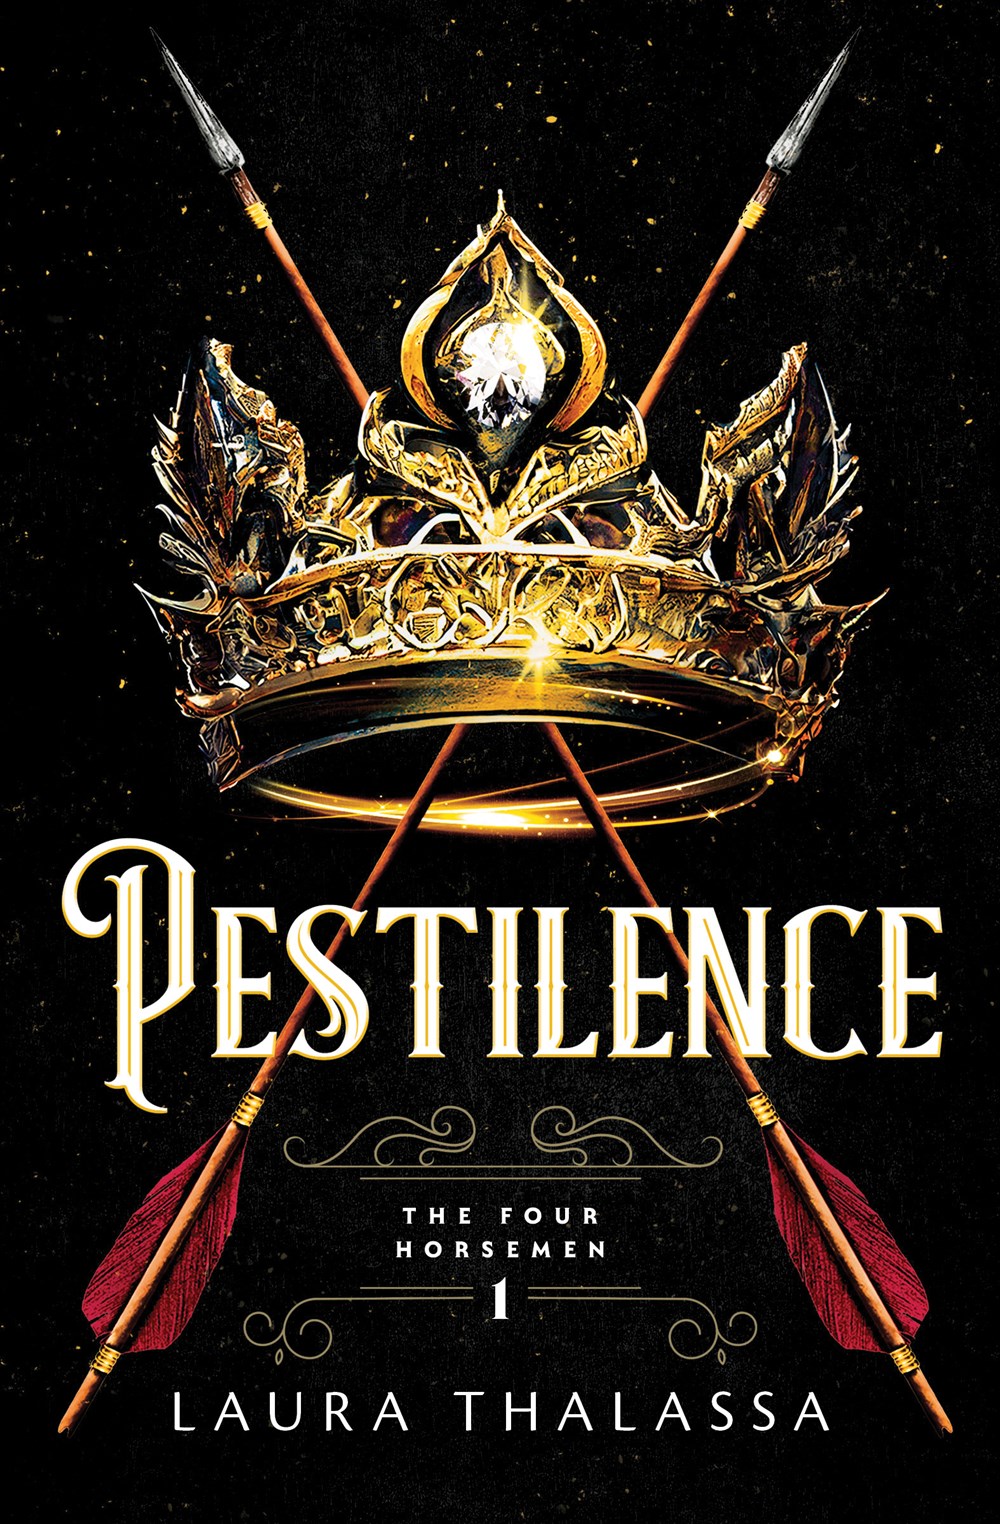 Pestilence - Laura Thalassa